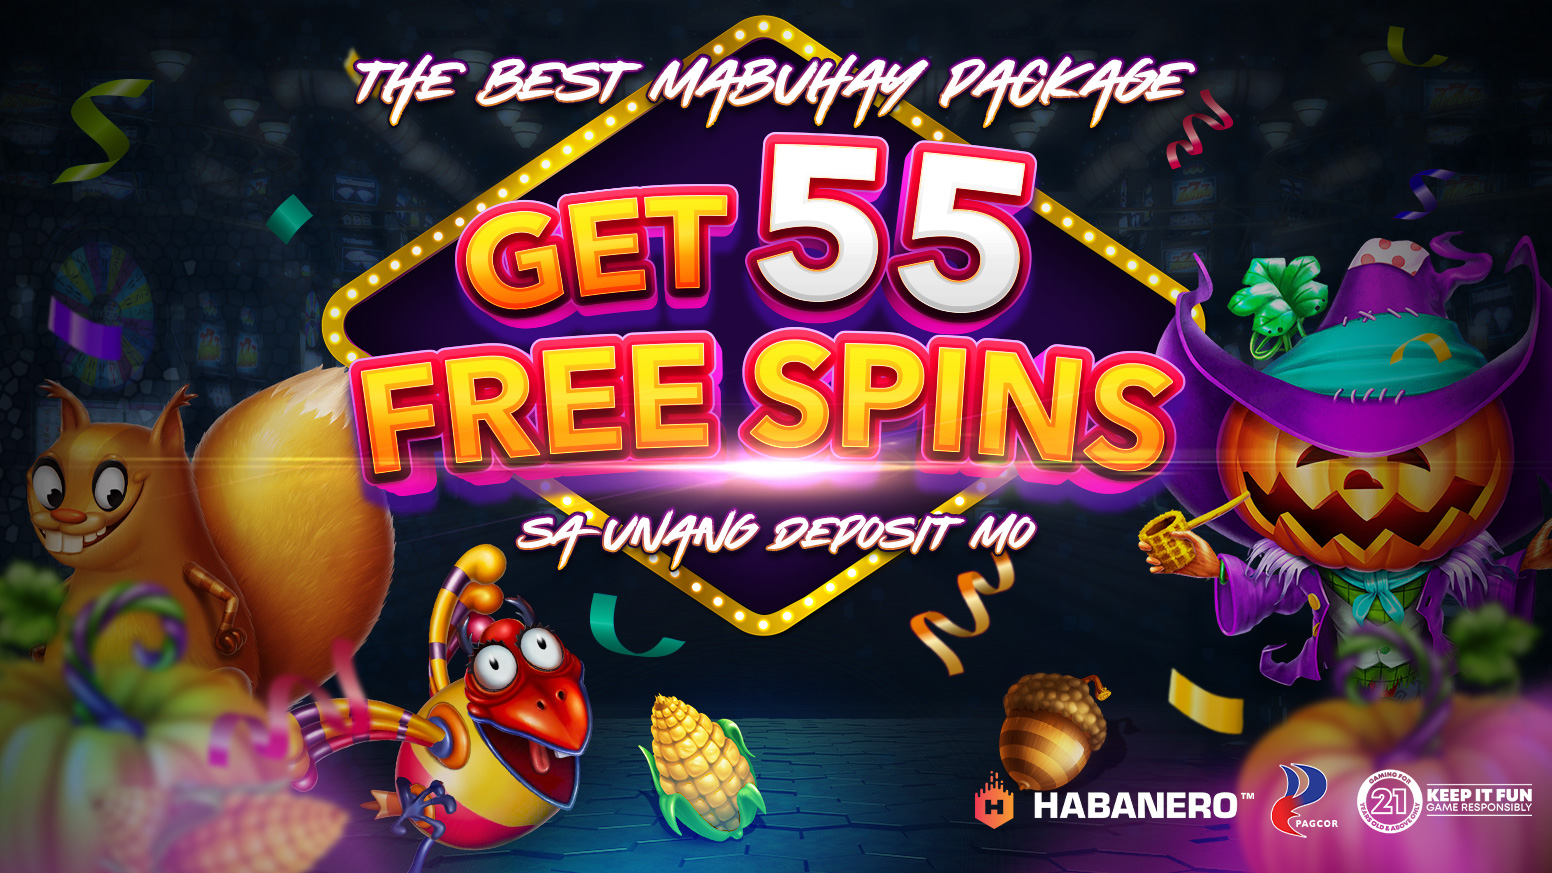 55 Free Spins sa Unang Deposit Mo